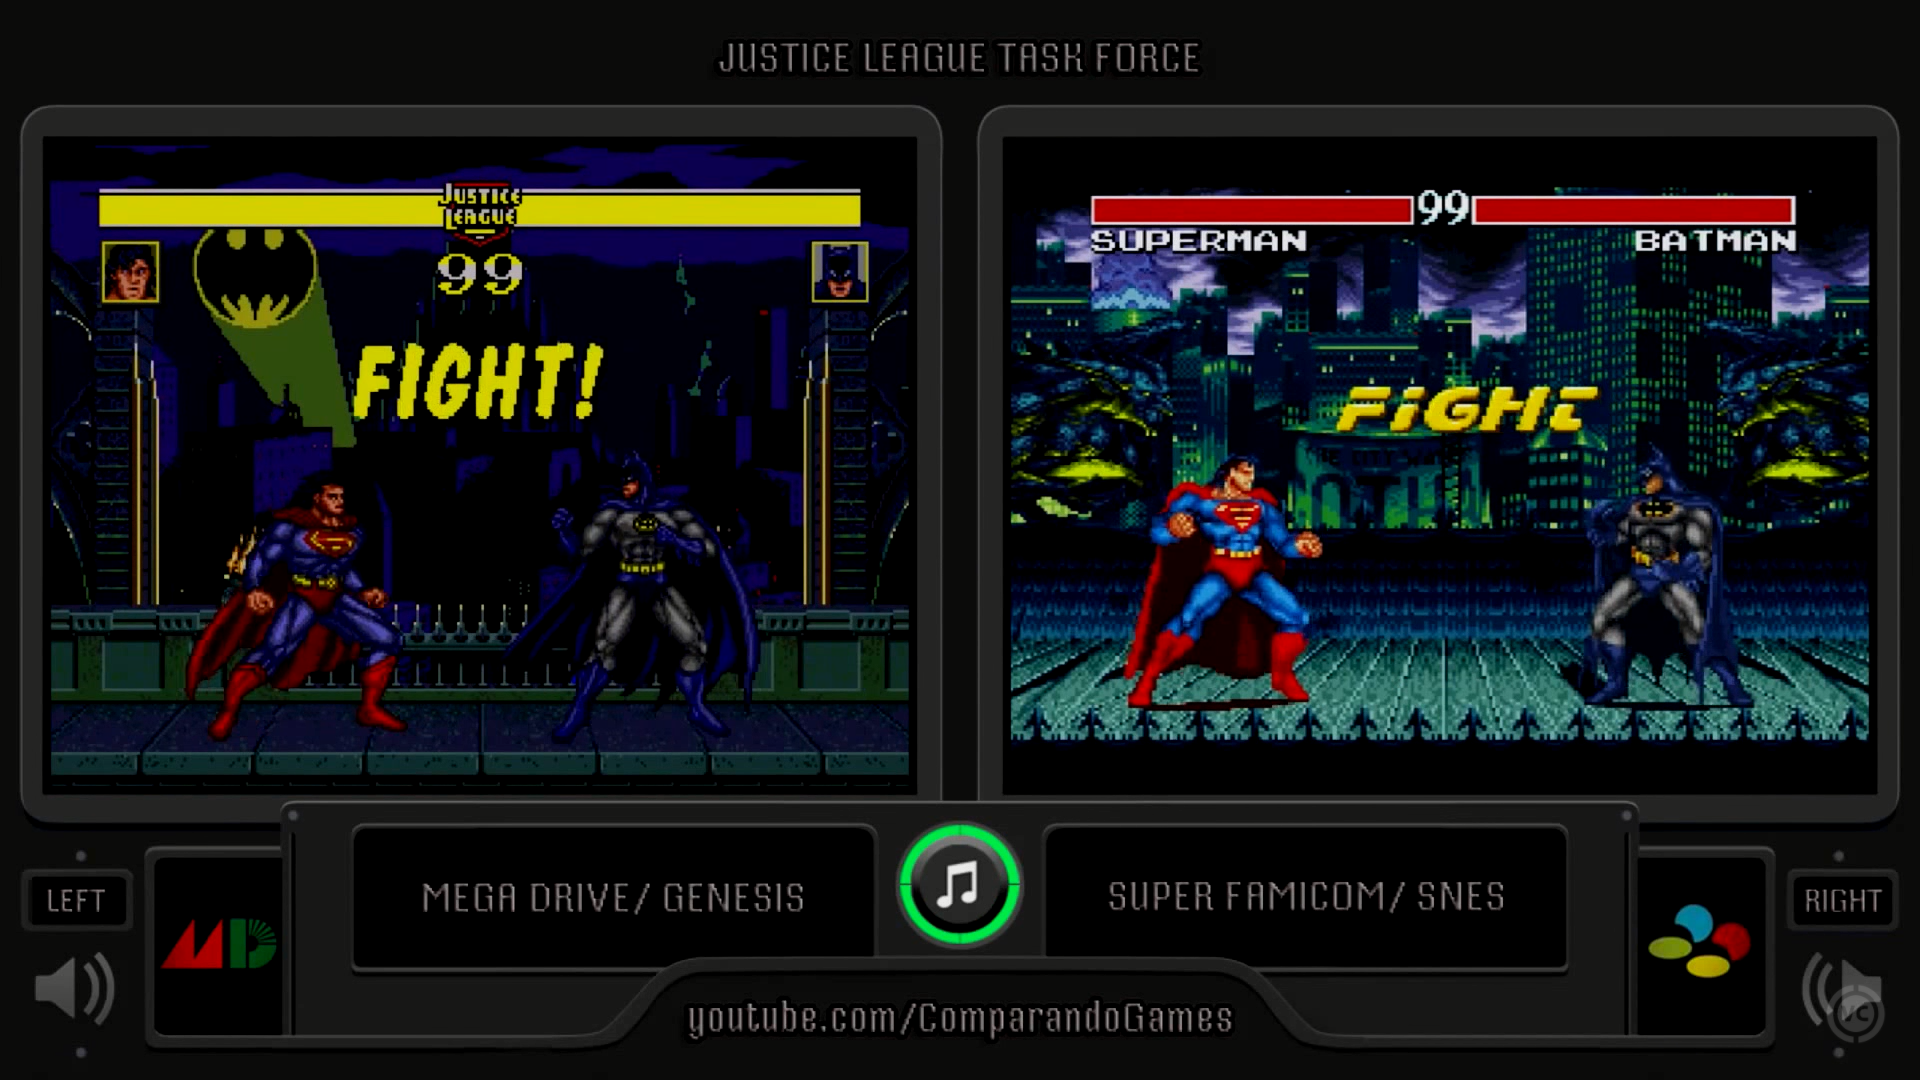 《Justice League Task Force》的双版本实机画面对比，从画面上看二者气质并没有想象中高度一致，毕竟两部主机性能特点不同